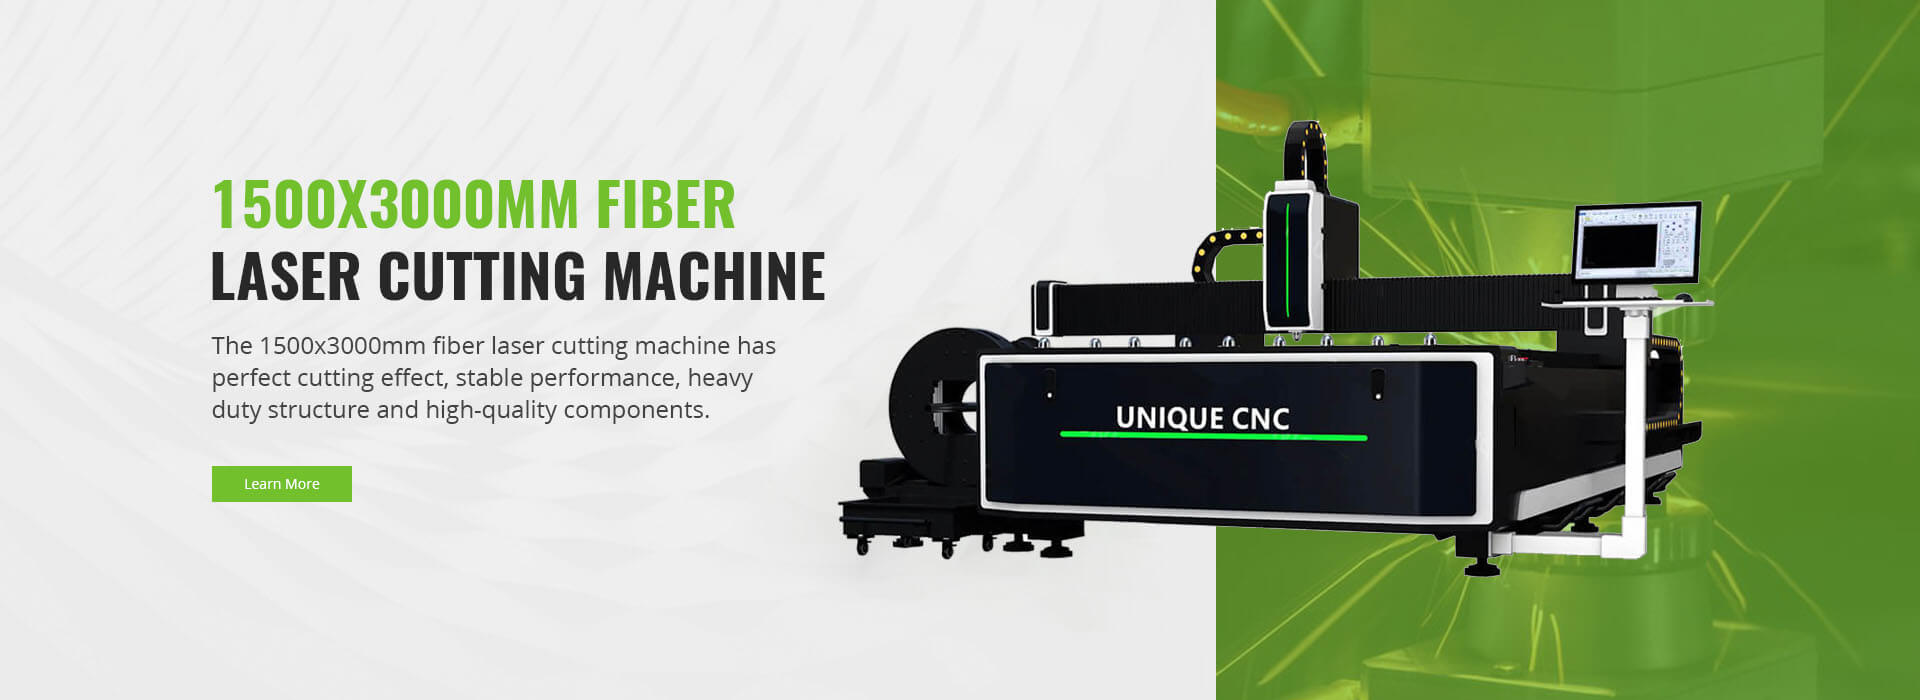 fiber laser cutter machine